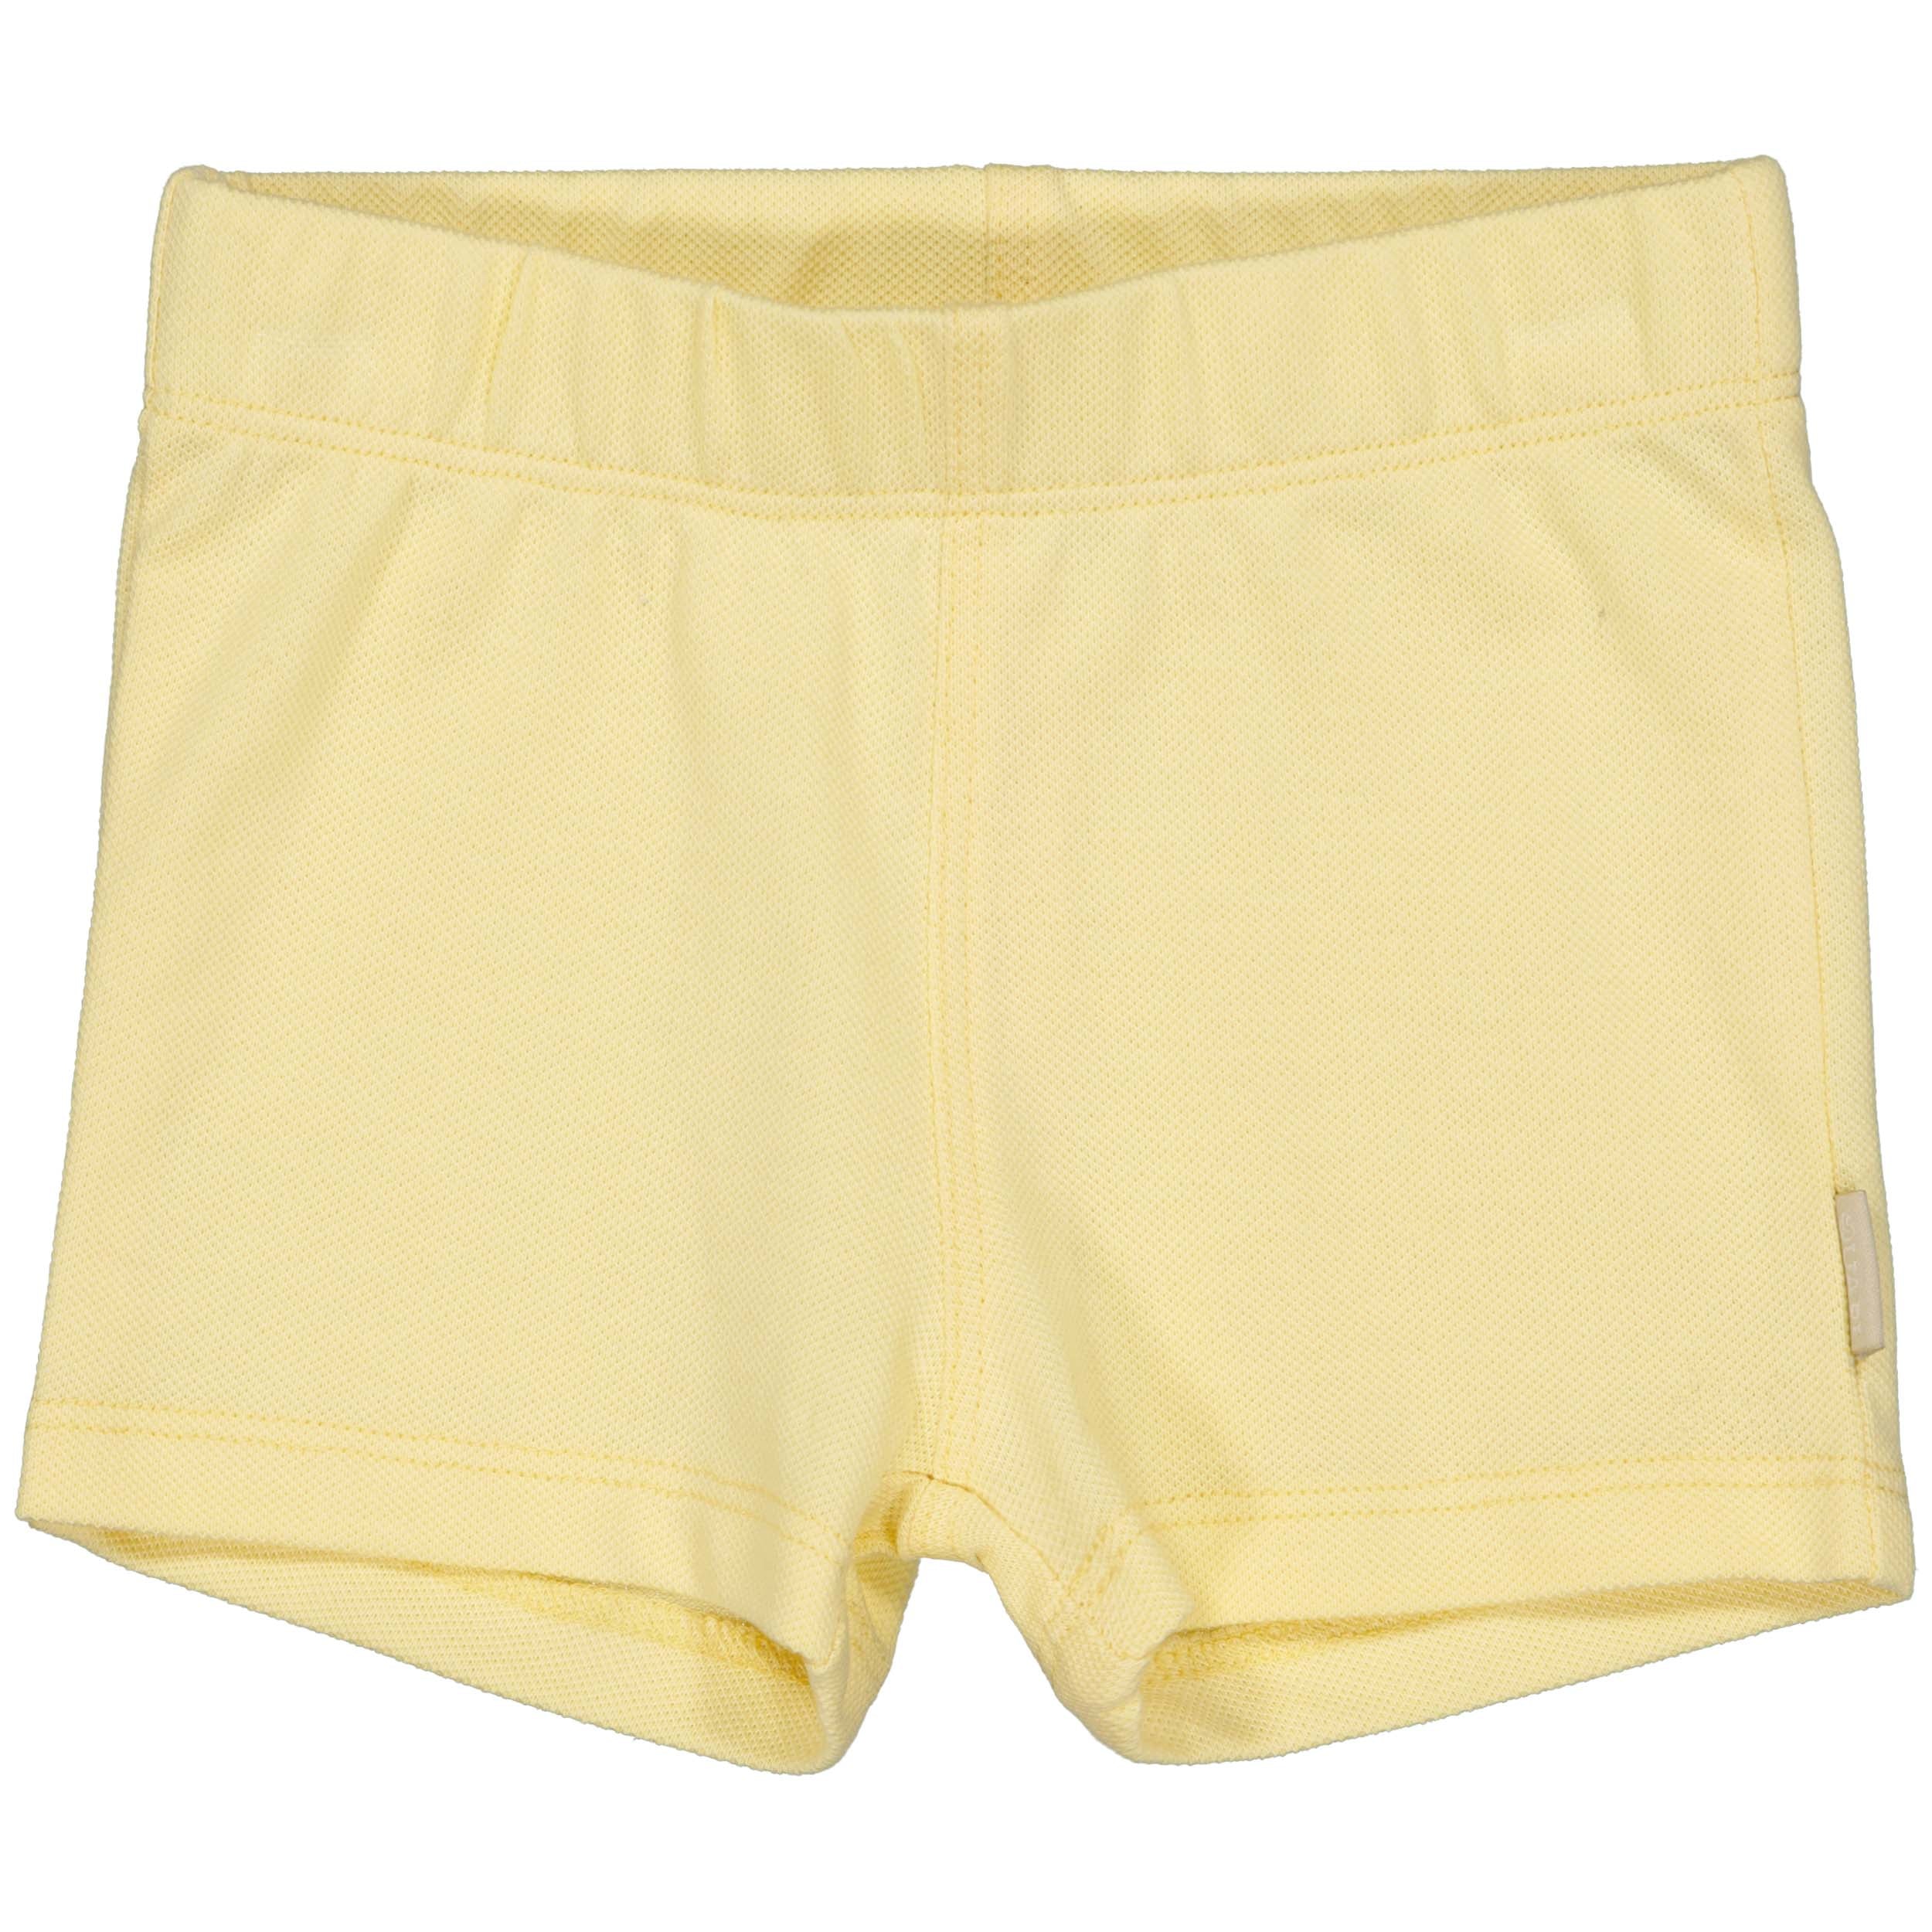 Jongens Shorts Sonny van Quapi Newborn in de kleur Yellow Cream in maat 68.